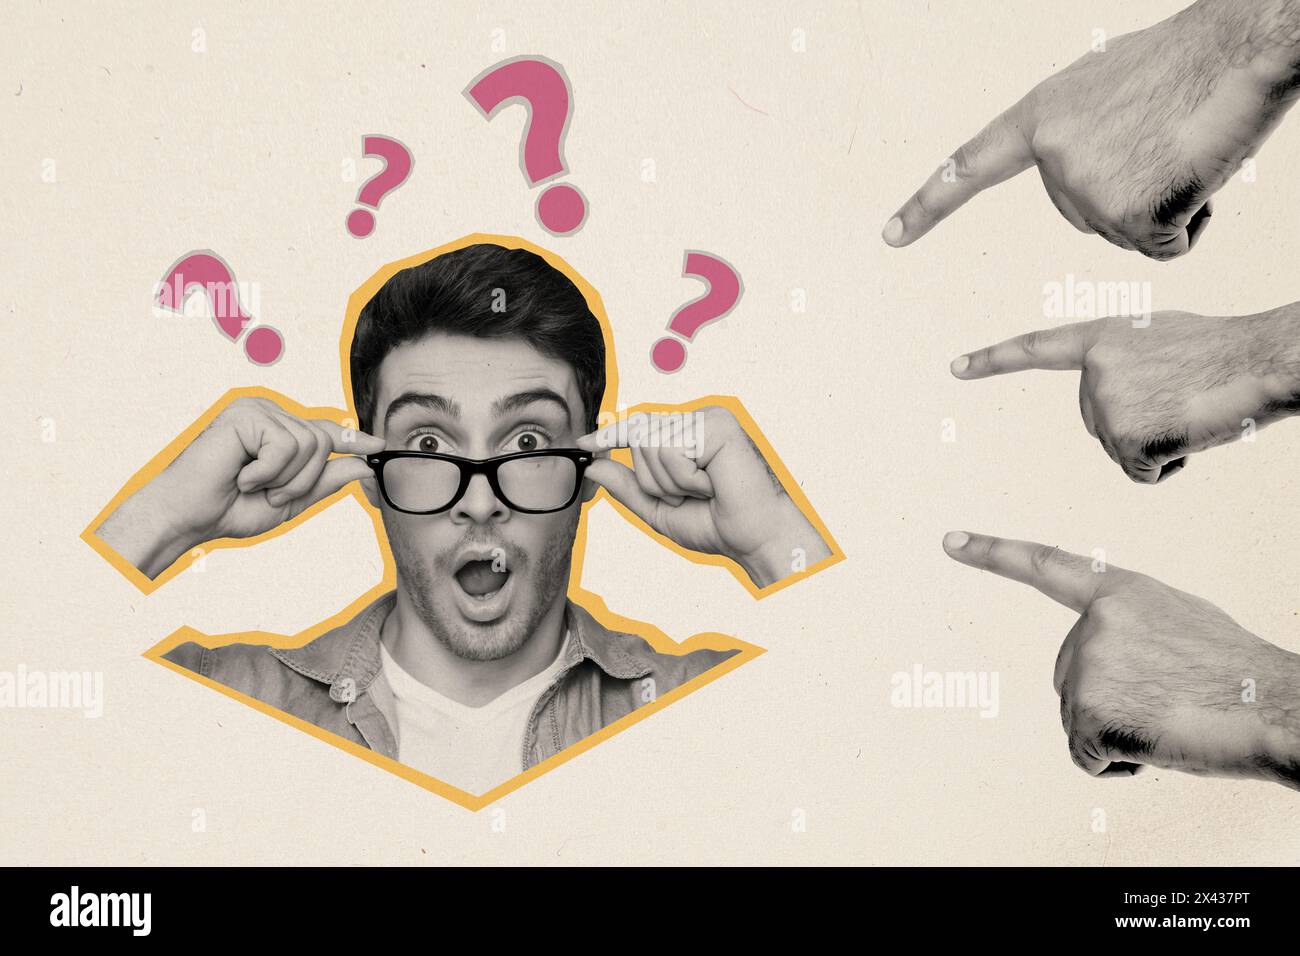 Croquis image tendance illustration composite collage de jeune homme Think Solve puzzle choqué main regardant montrer geste doigt moqueur point moquerie Banque D'Images